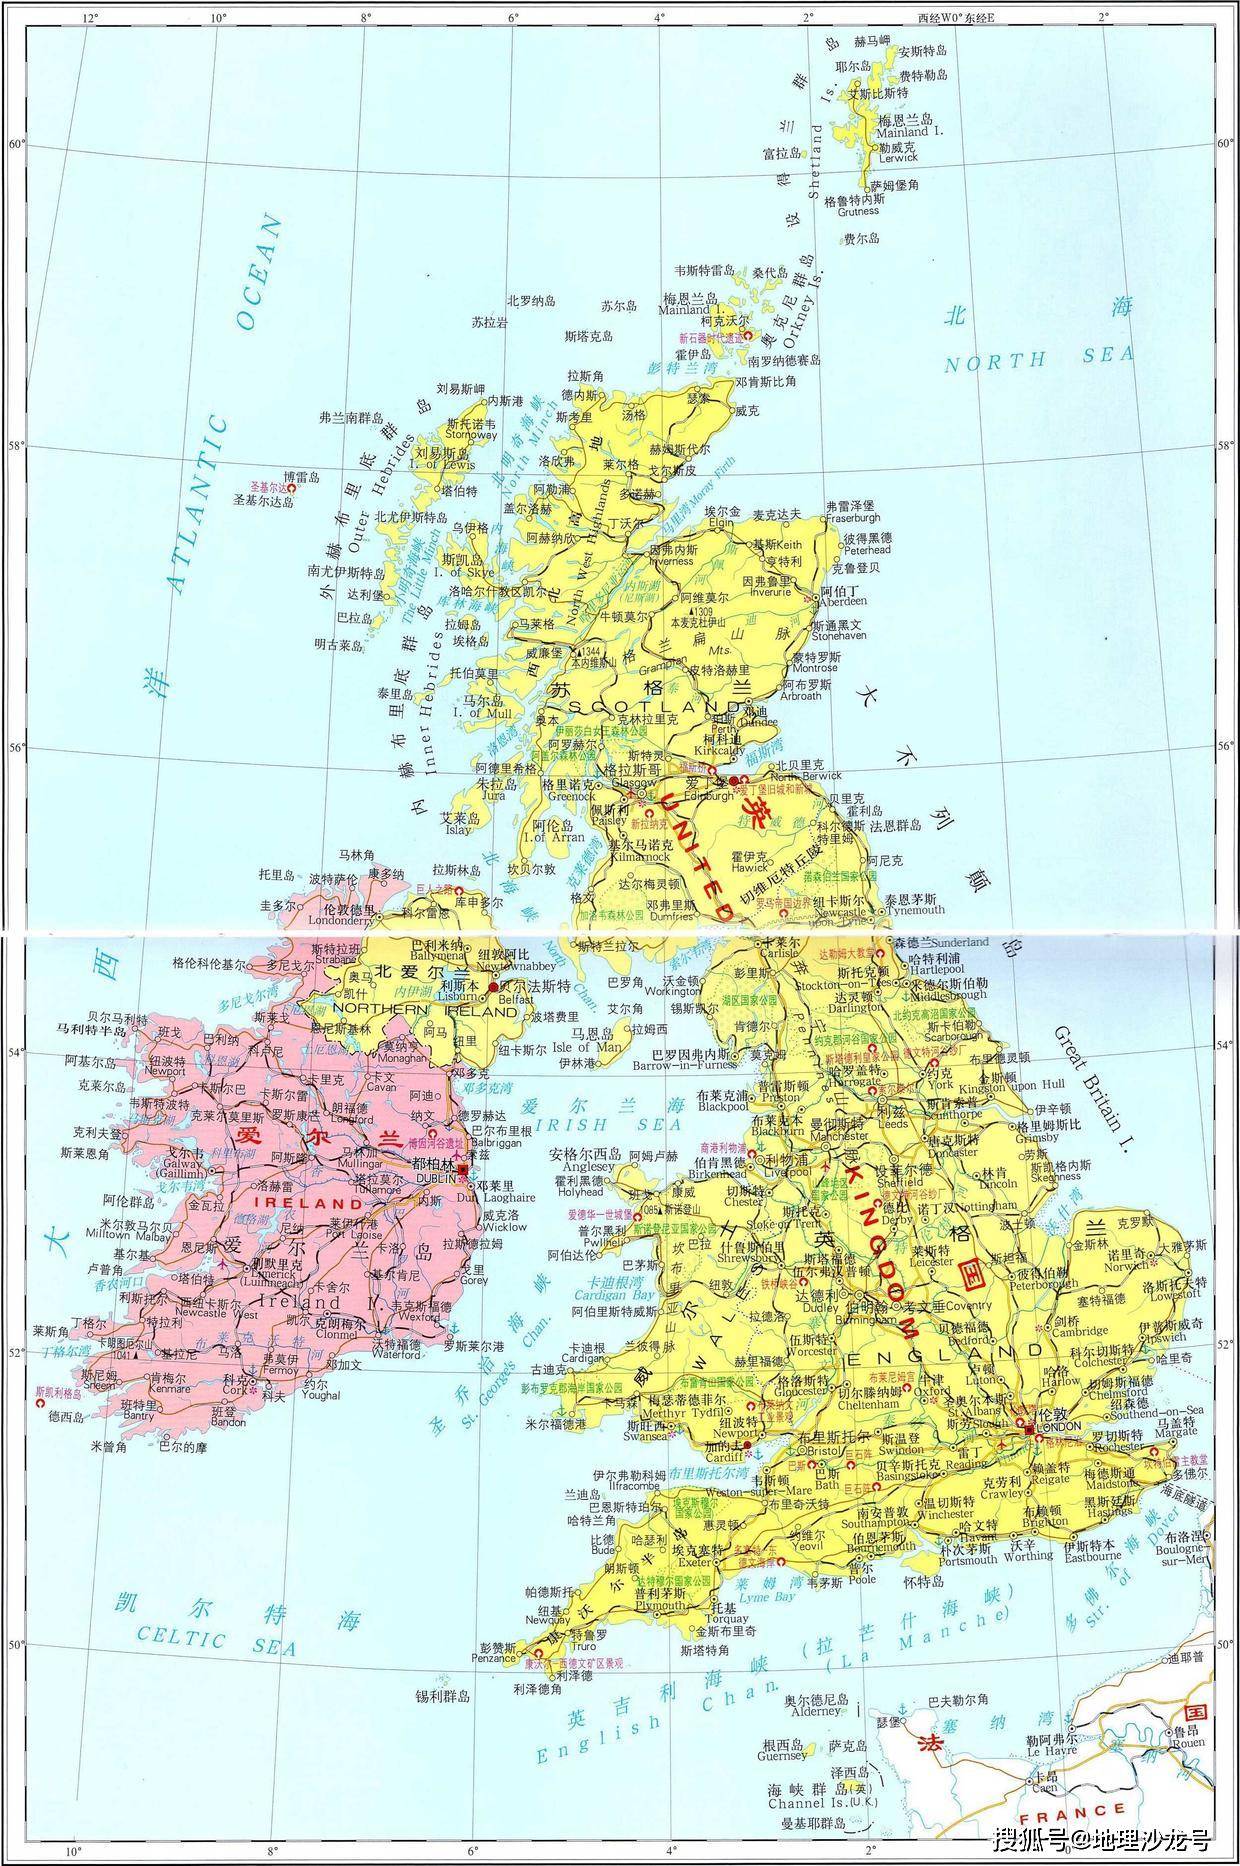 大不列颠岛和爱尔兰岛 爱尔兰岛爱尔兰北爱尔兰英国大不列颠岛